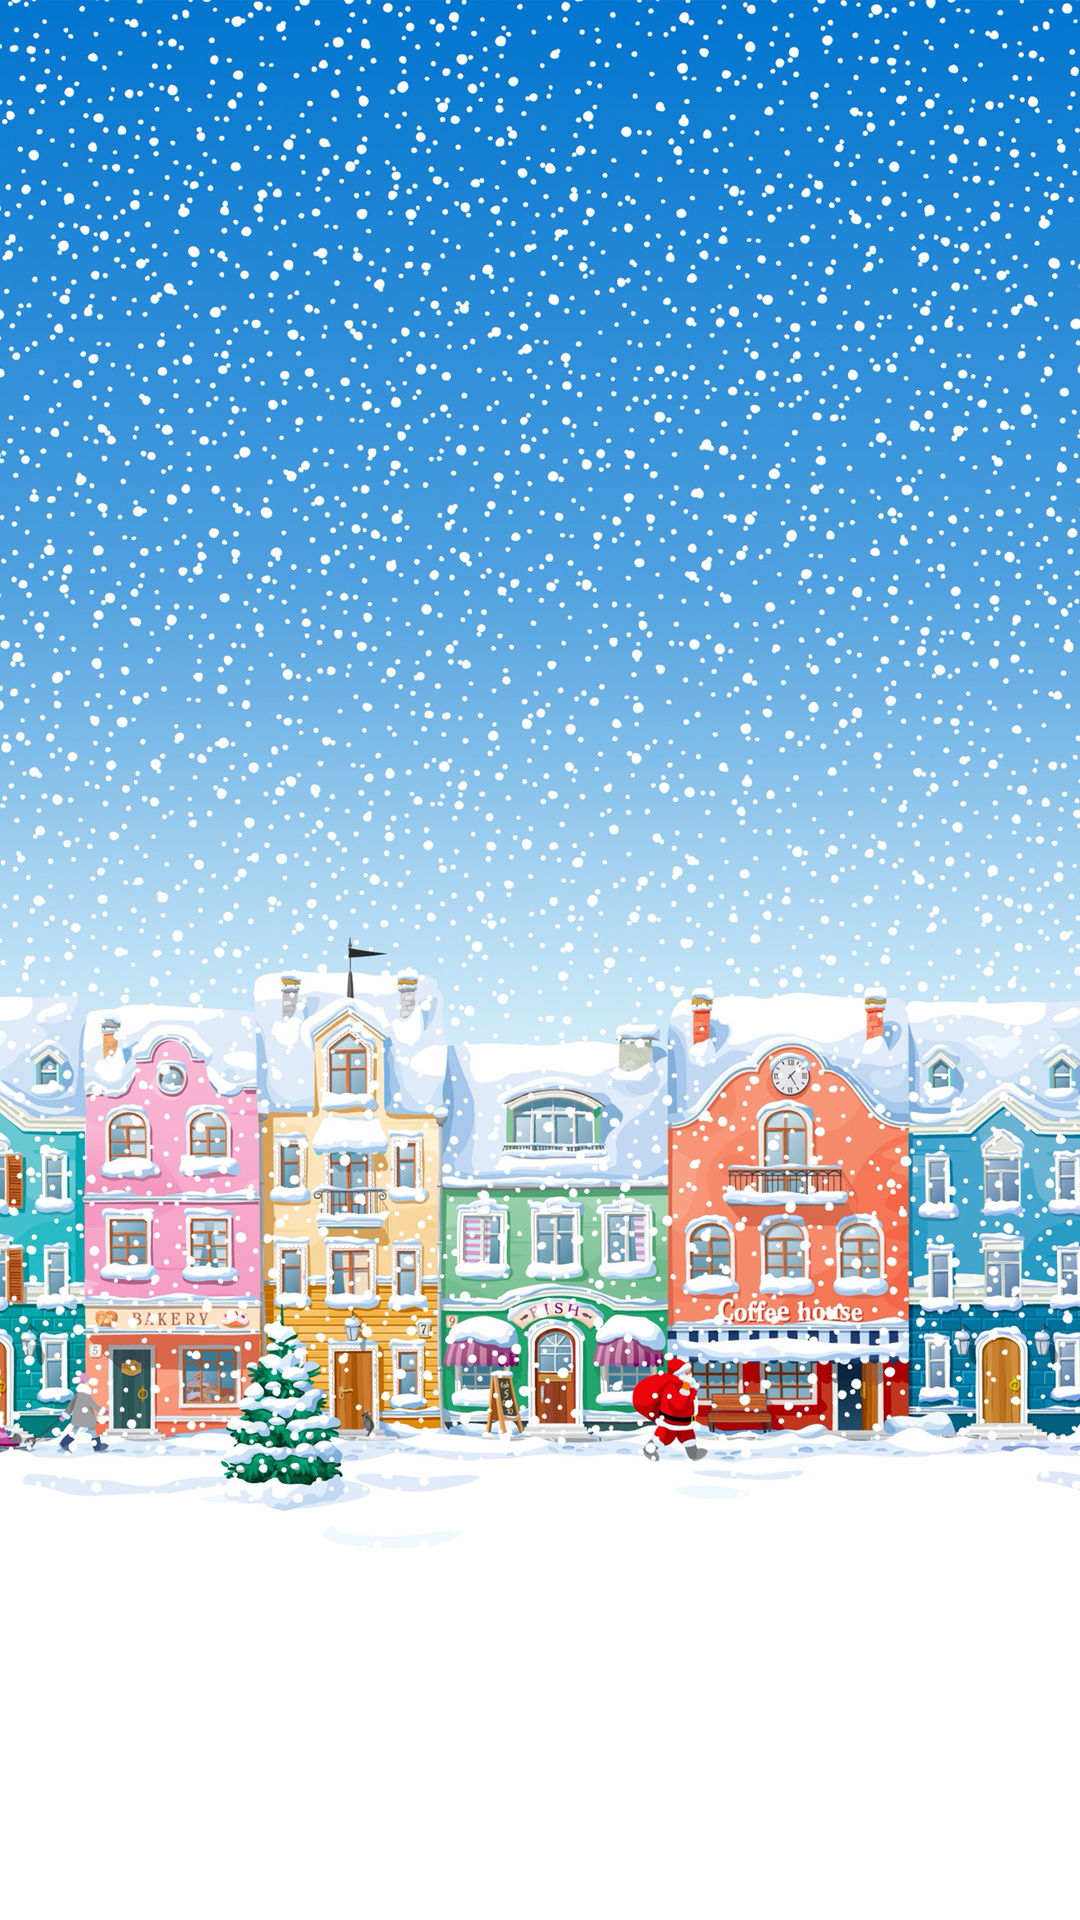 雪に覆われた町サンタクロースはクリスマスiphone8 Plus壁紙をお届け Iphoneチーズ